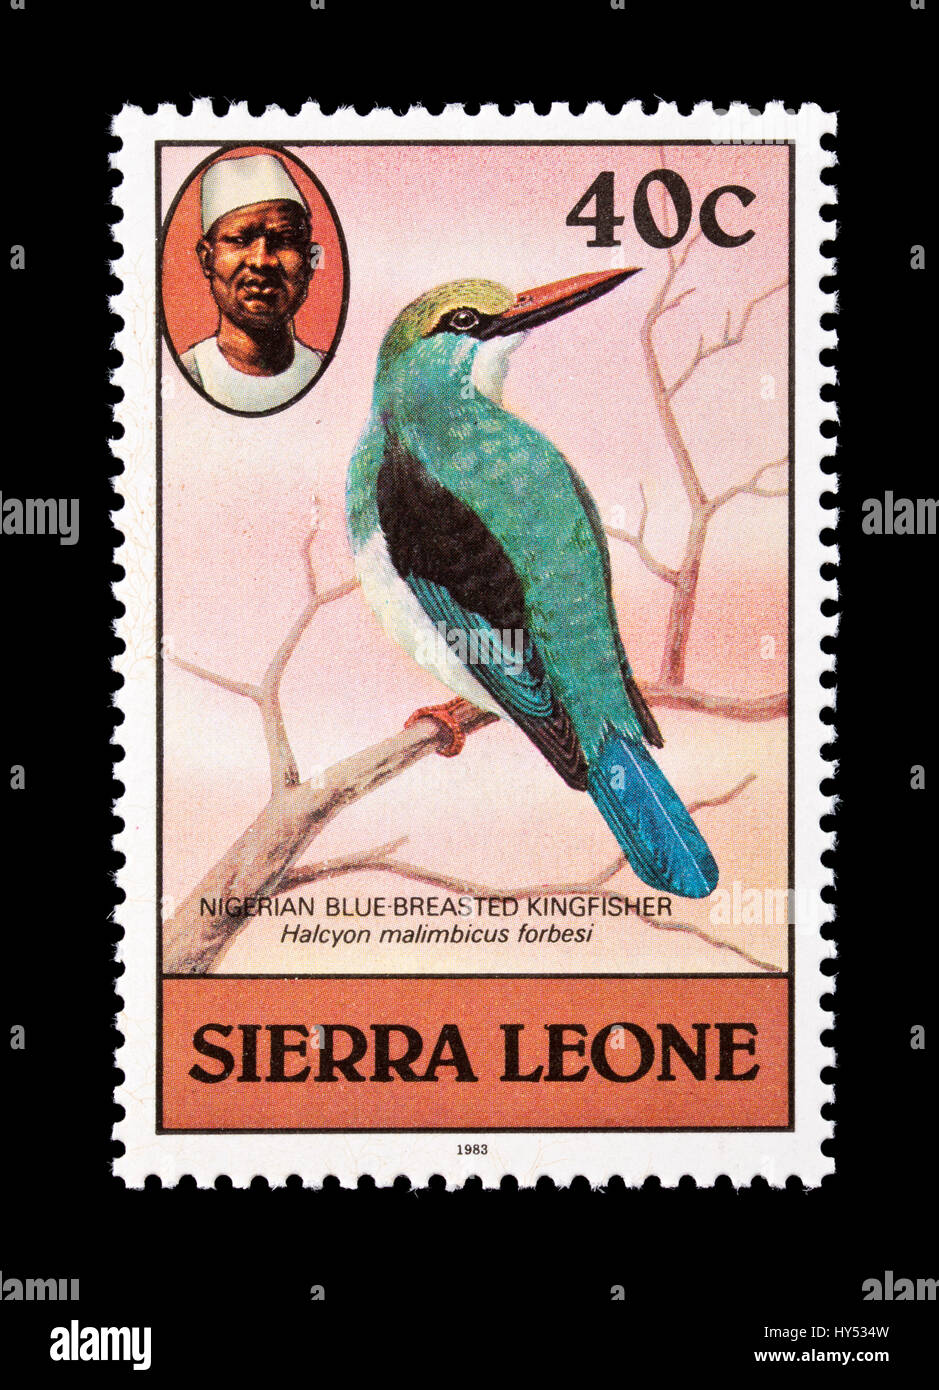 Timbre-poste à partir de la Sierra Leone représentant un bleu nigérian breasted kingfisher (Halcyon malimbica) Banque D'Images